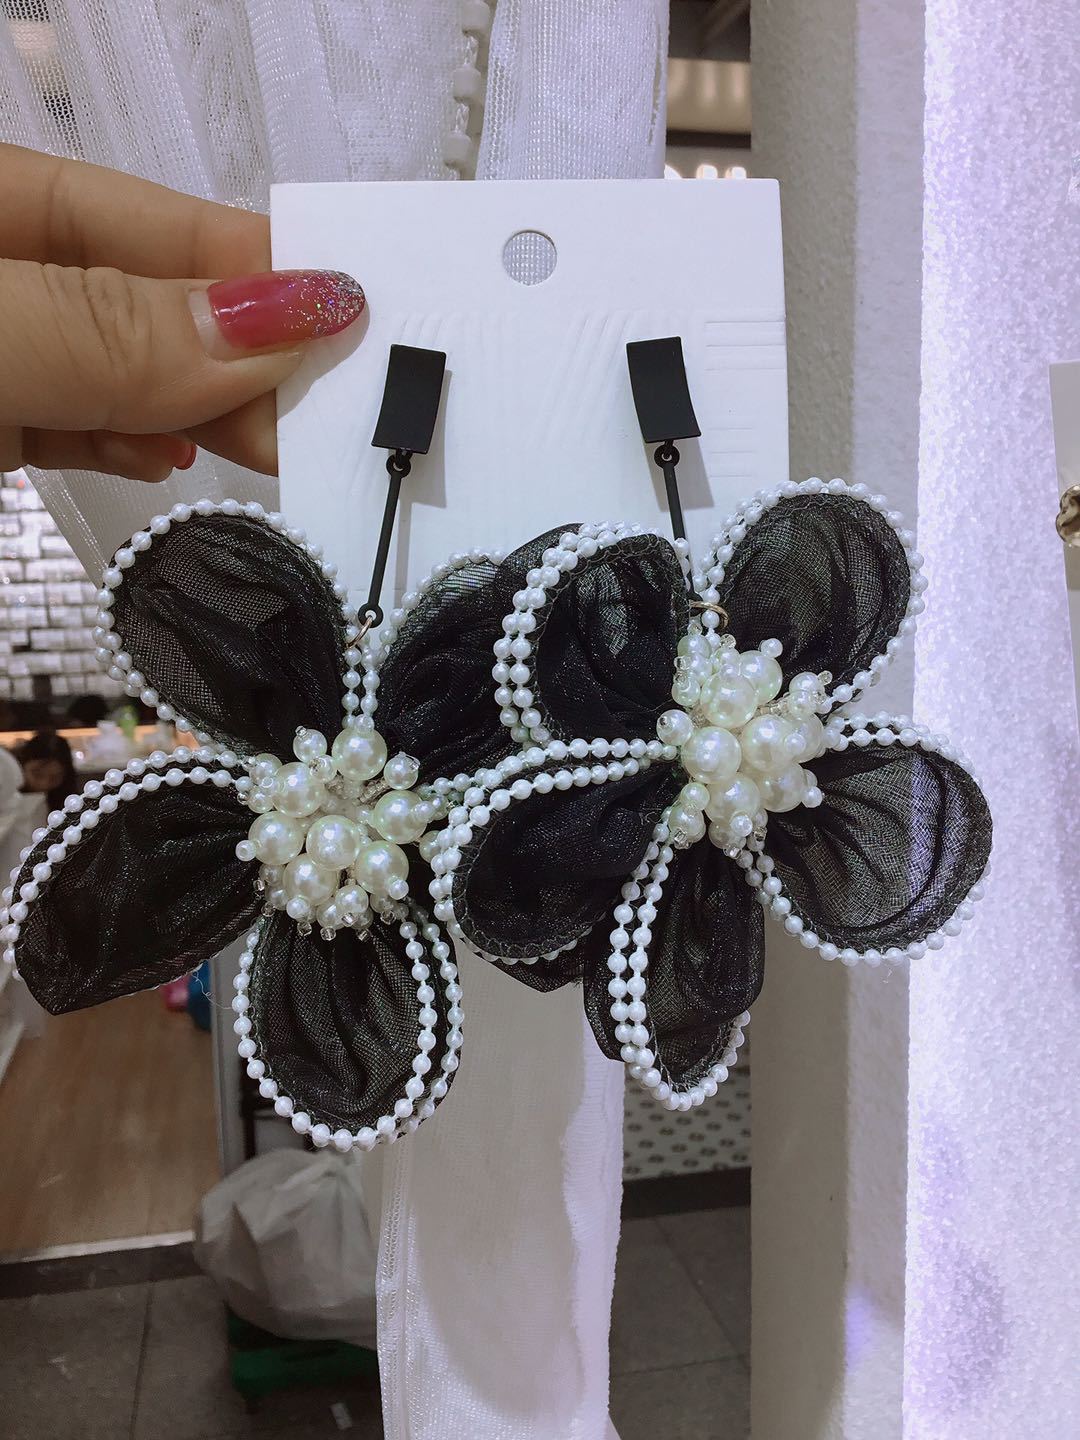 Black Needle Lace Flower Style Artificial Pearl Eardrop Fashion Earrings